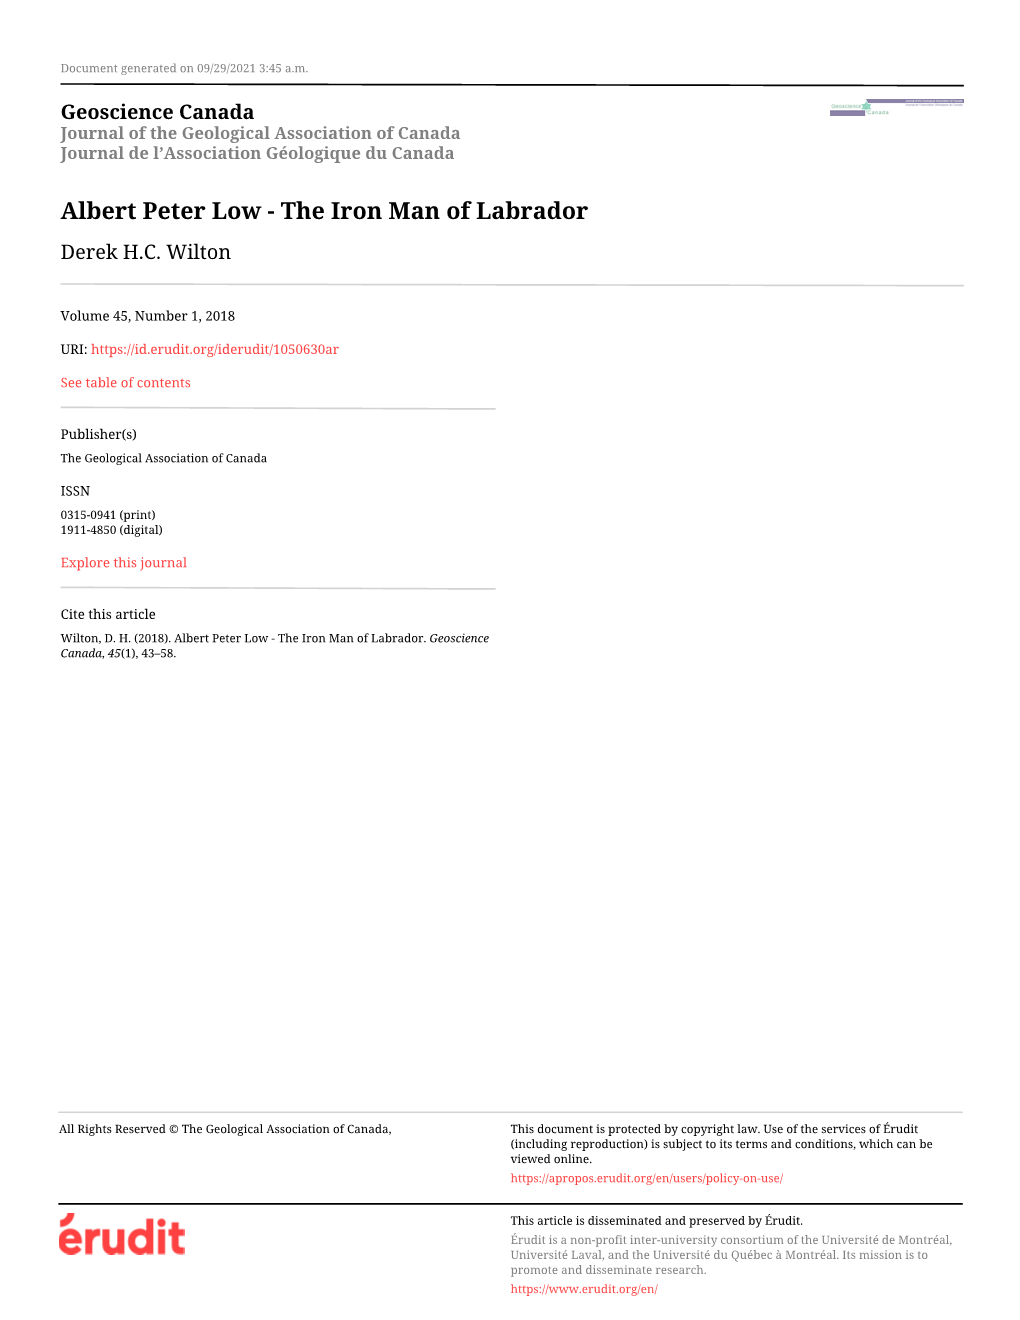 Albert Peter Low - the Iron Man of Labrador Derek H.C